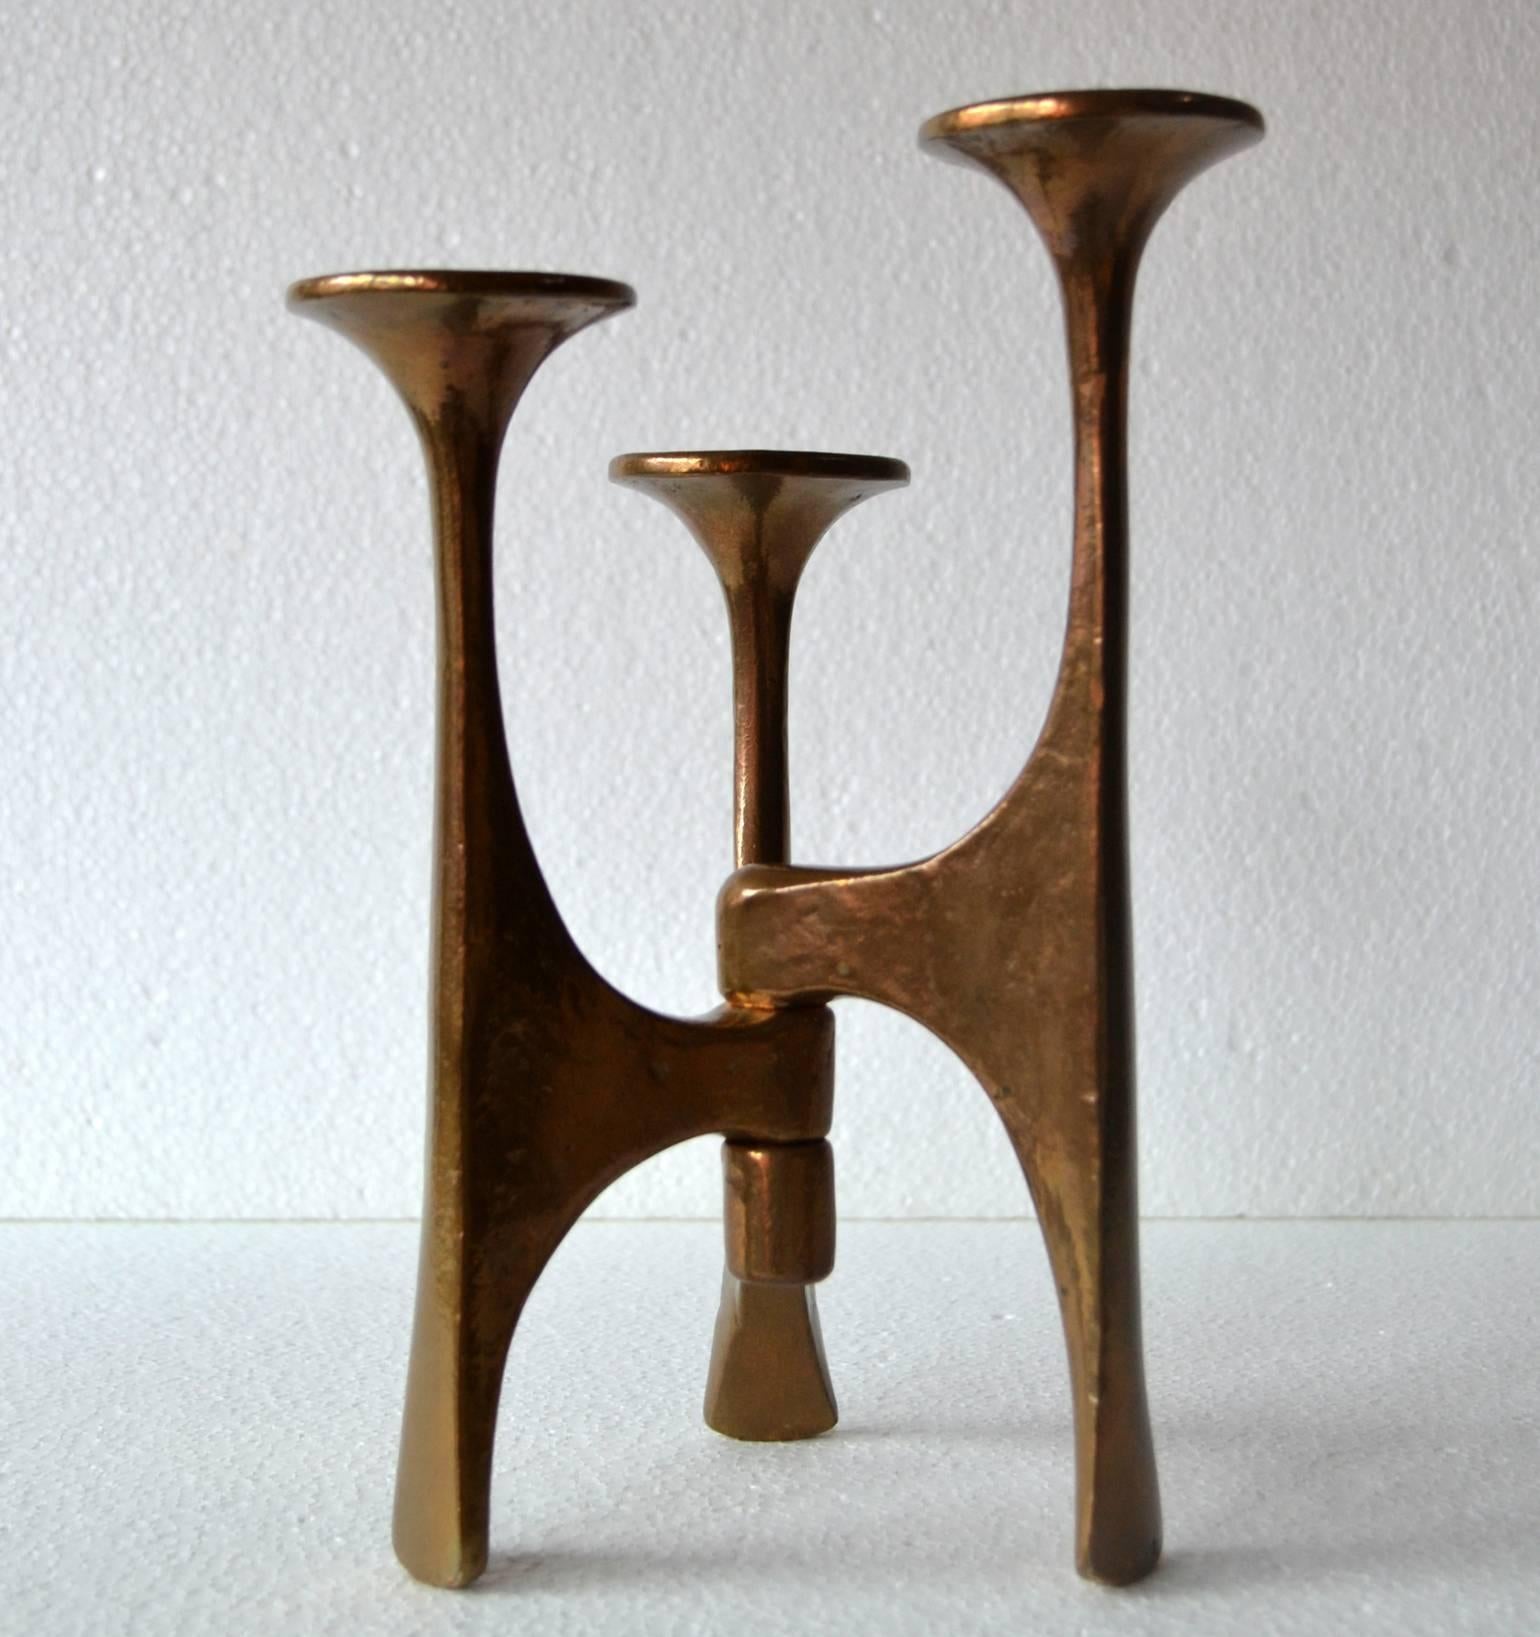 Sculptural Mid-Century Modern Bronze Candleholder with Three Arms (Europäisch)